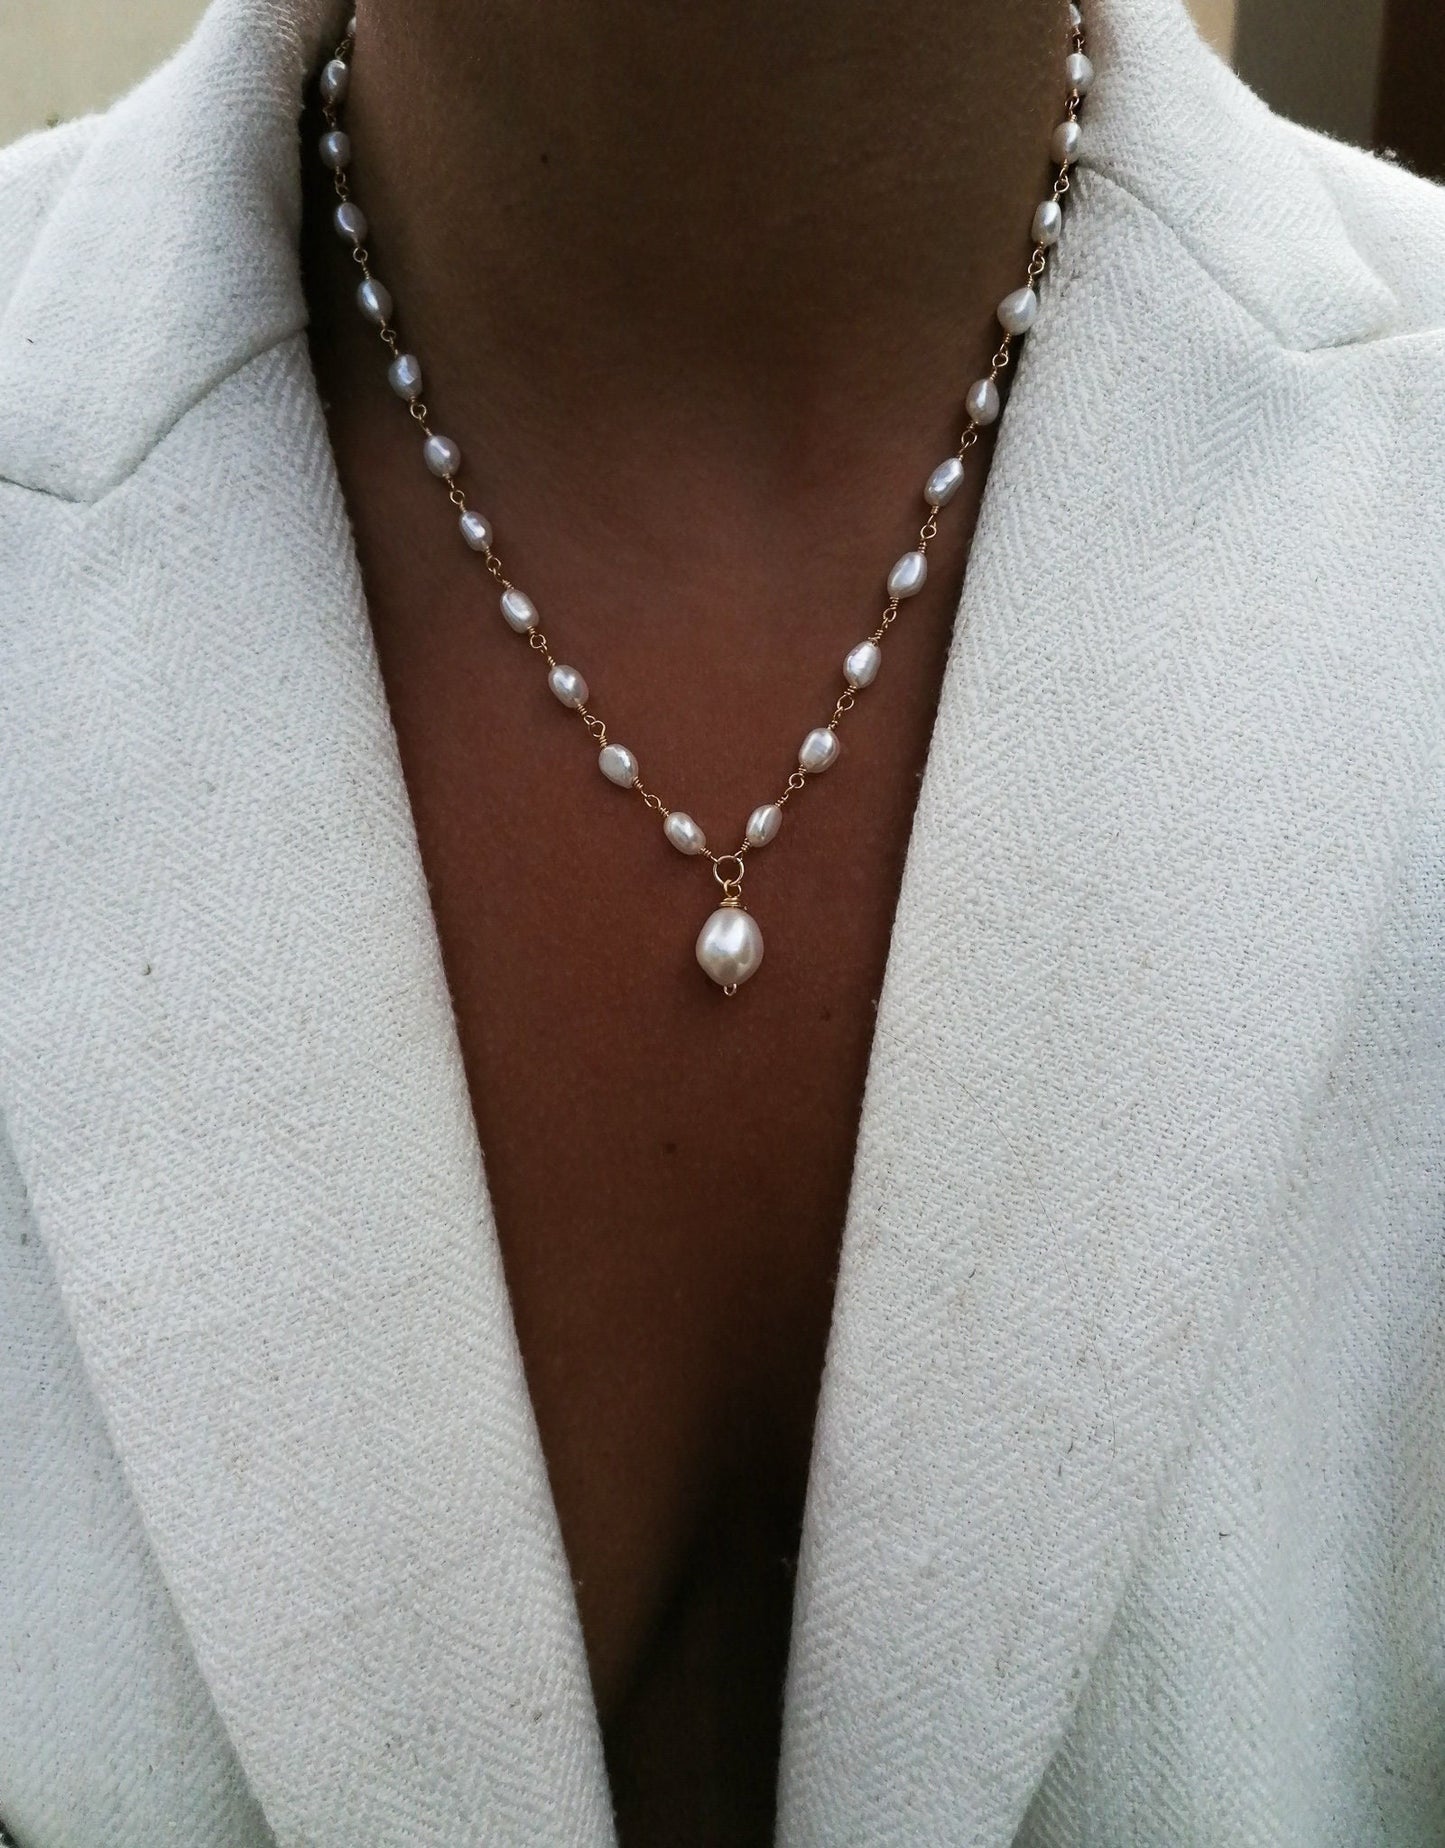 Ella necklace